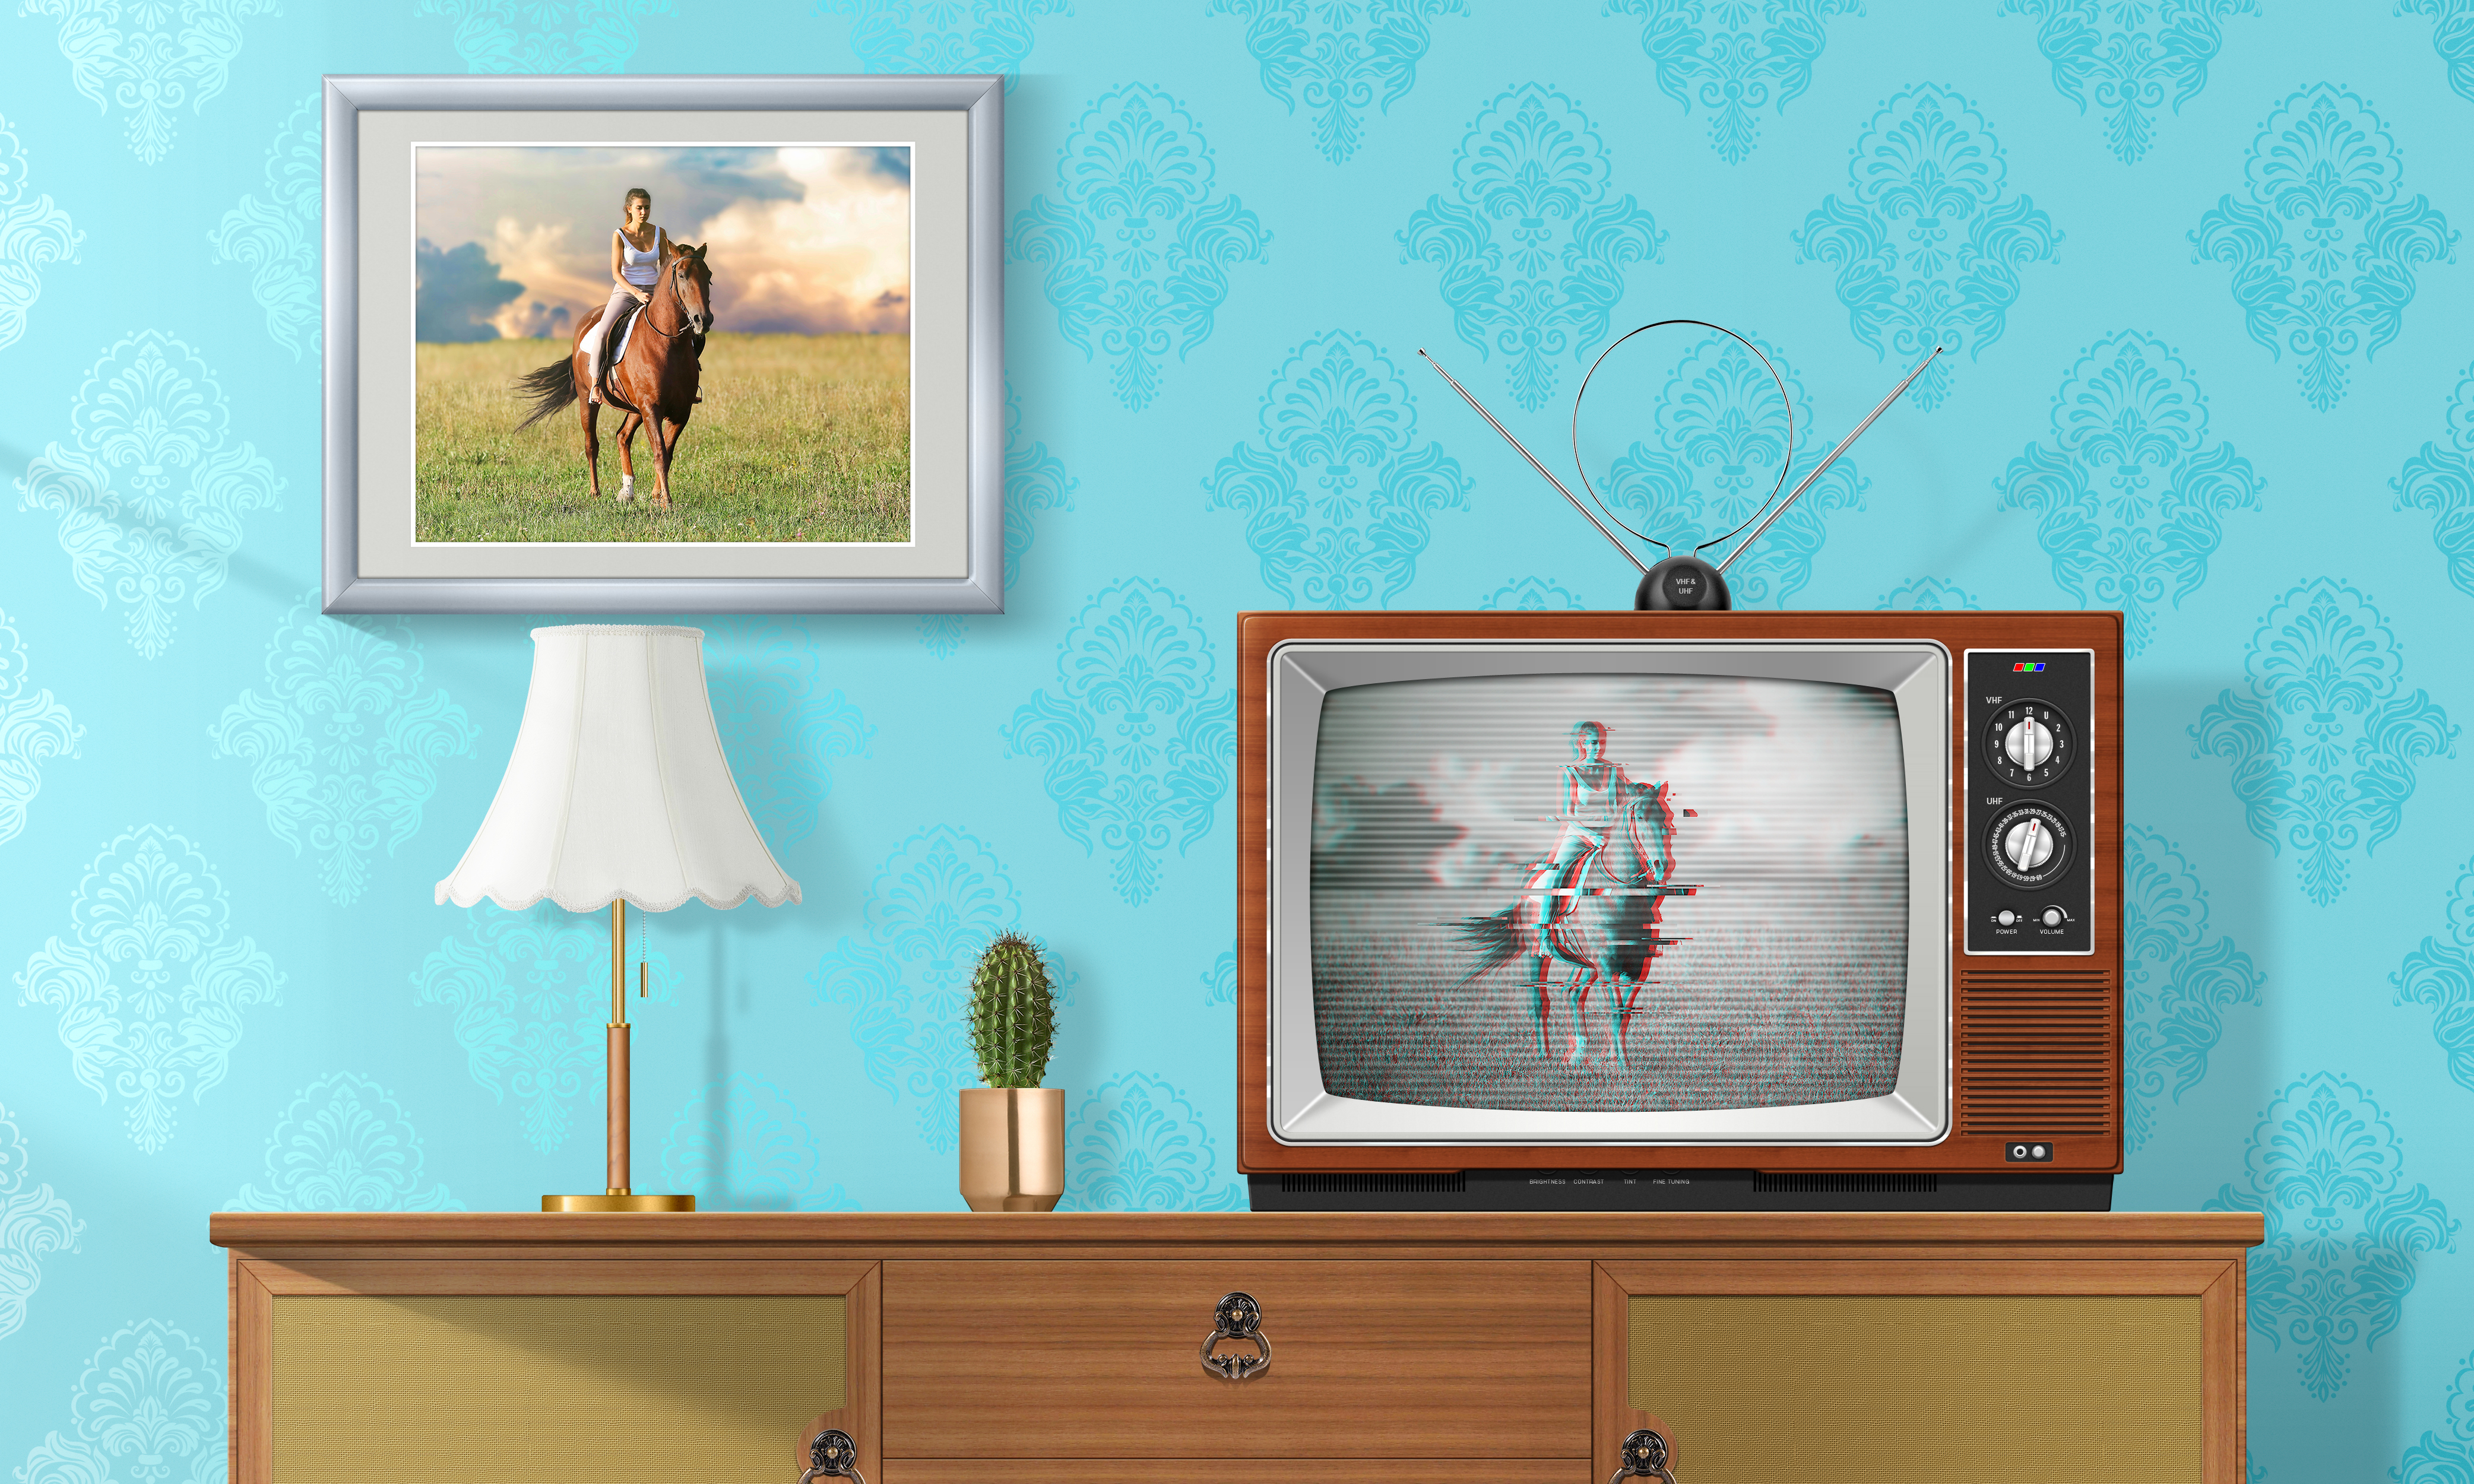 General 4167x2500 glitch art TV horse horse riding